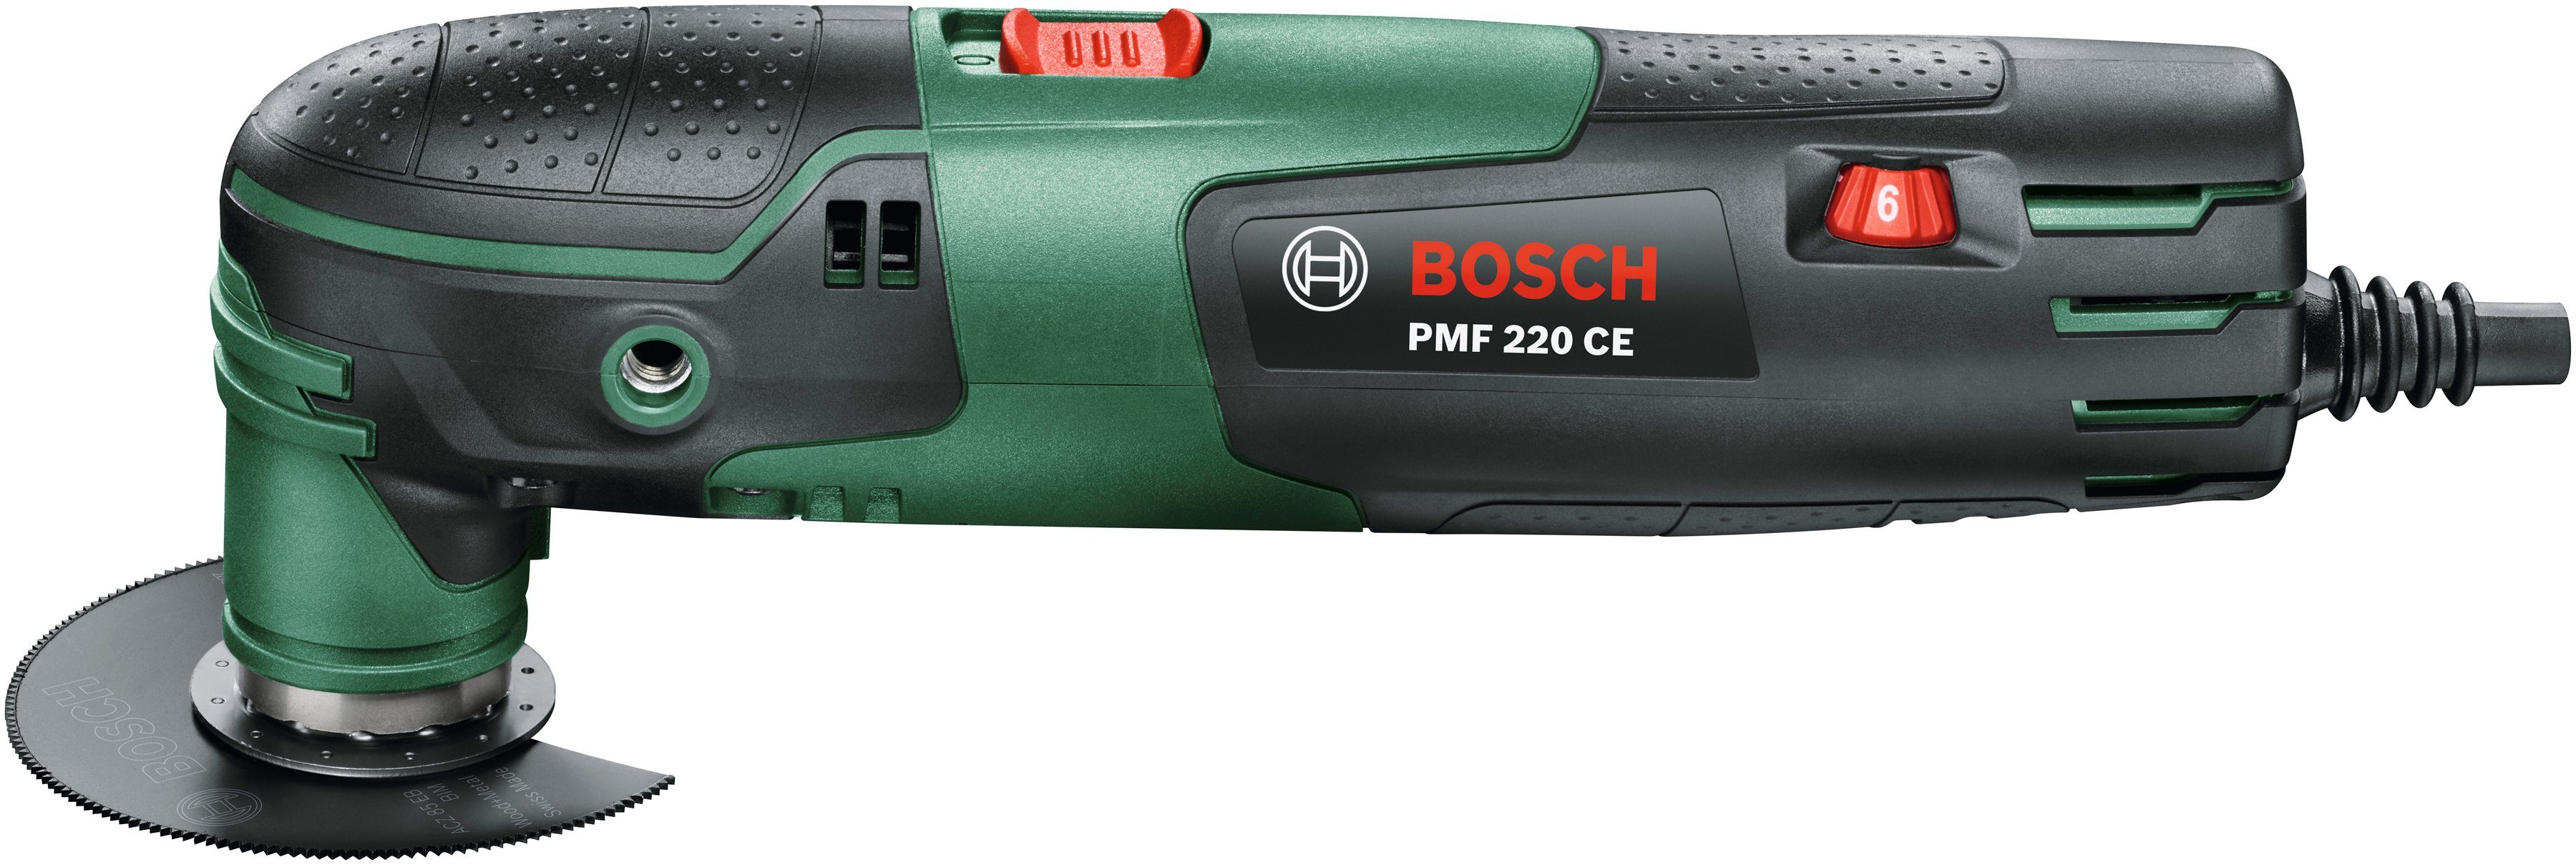 Bosch Home & Garden Elektro-Multifunktionswerkzeug Zubehör Kunststoffkoffer und W, PMF 220 CE, inkl. 220